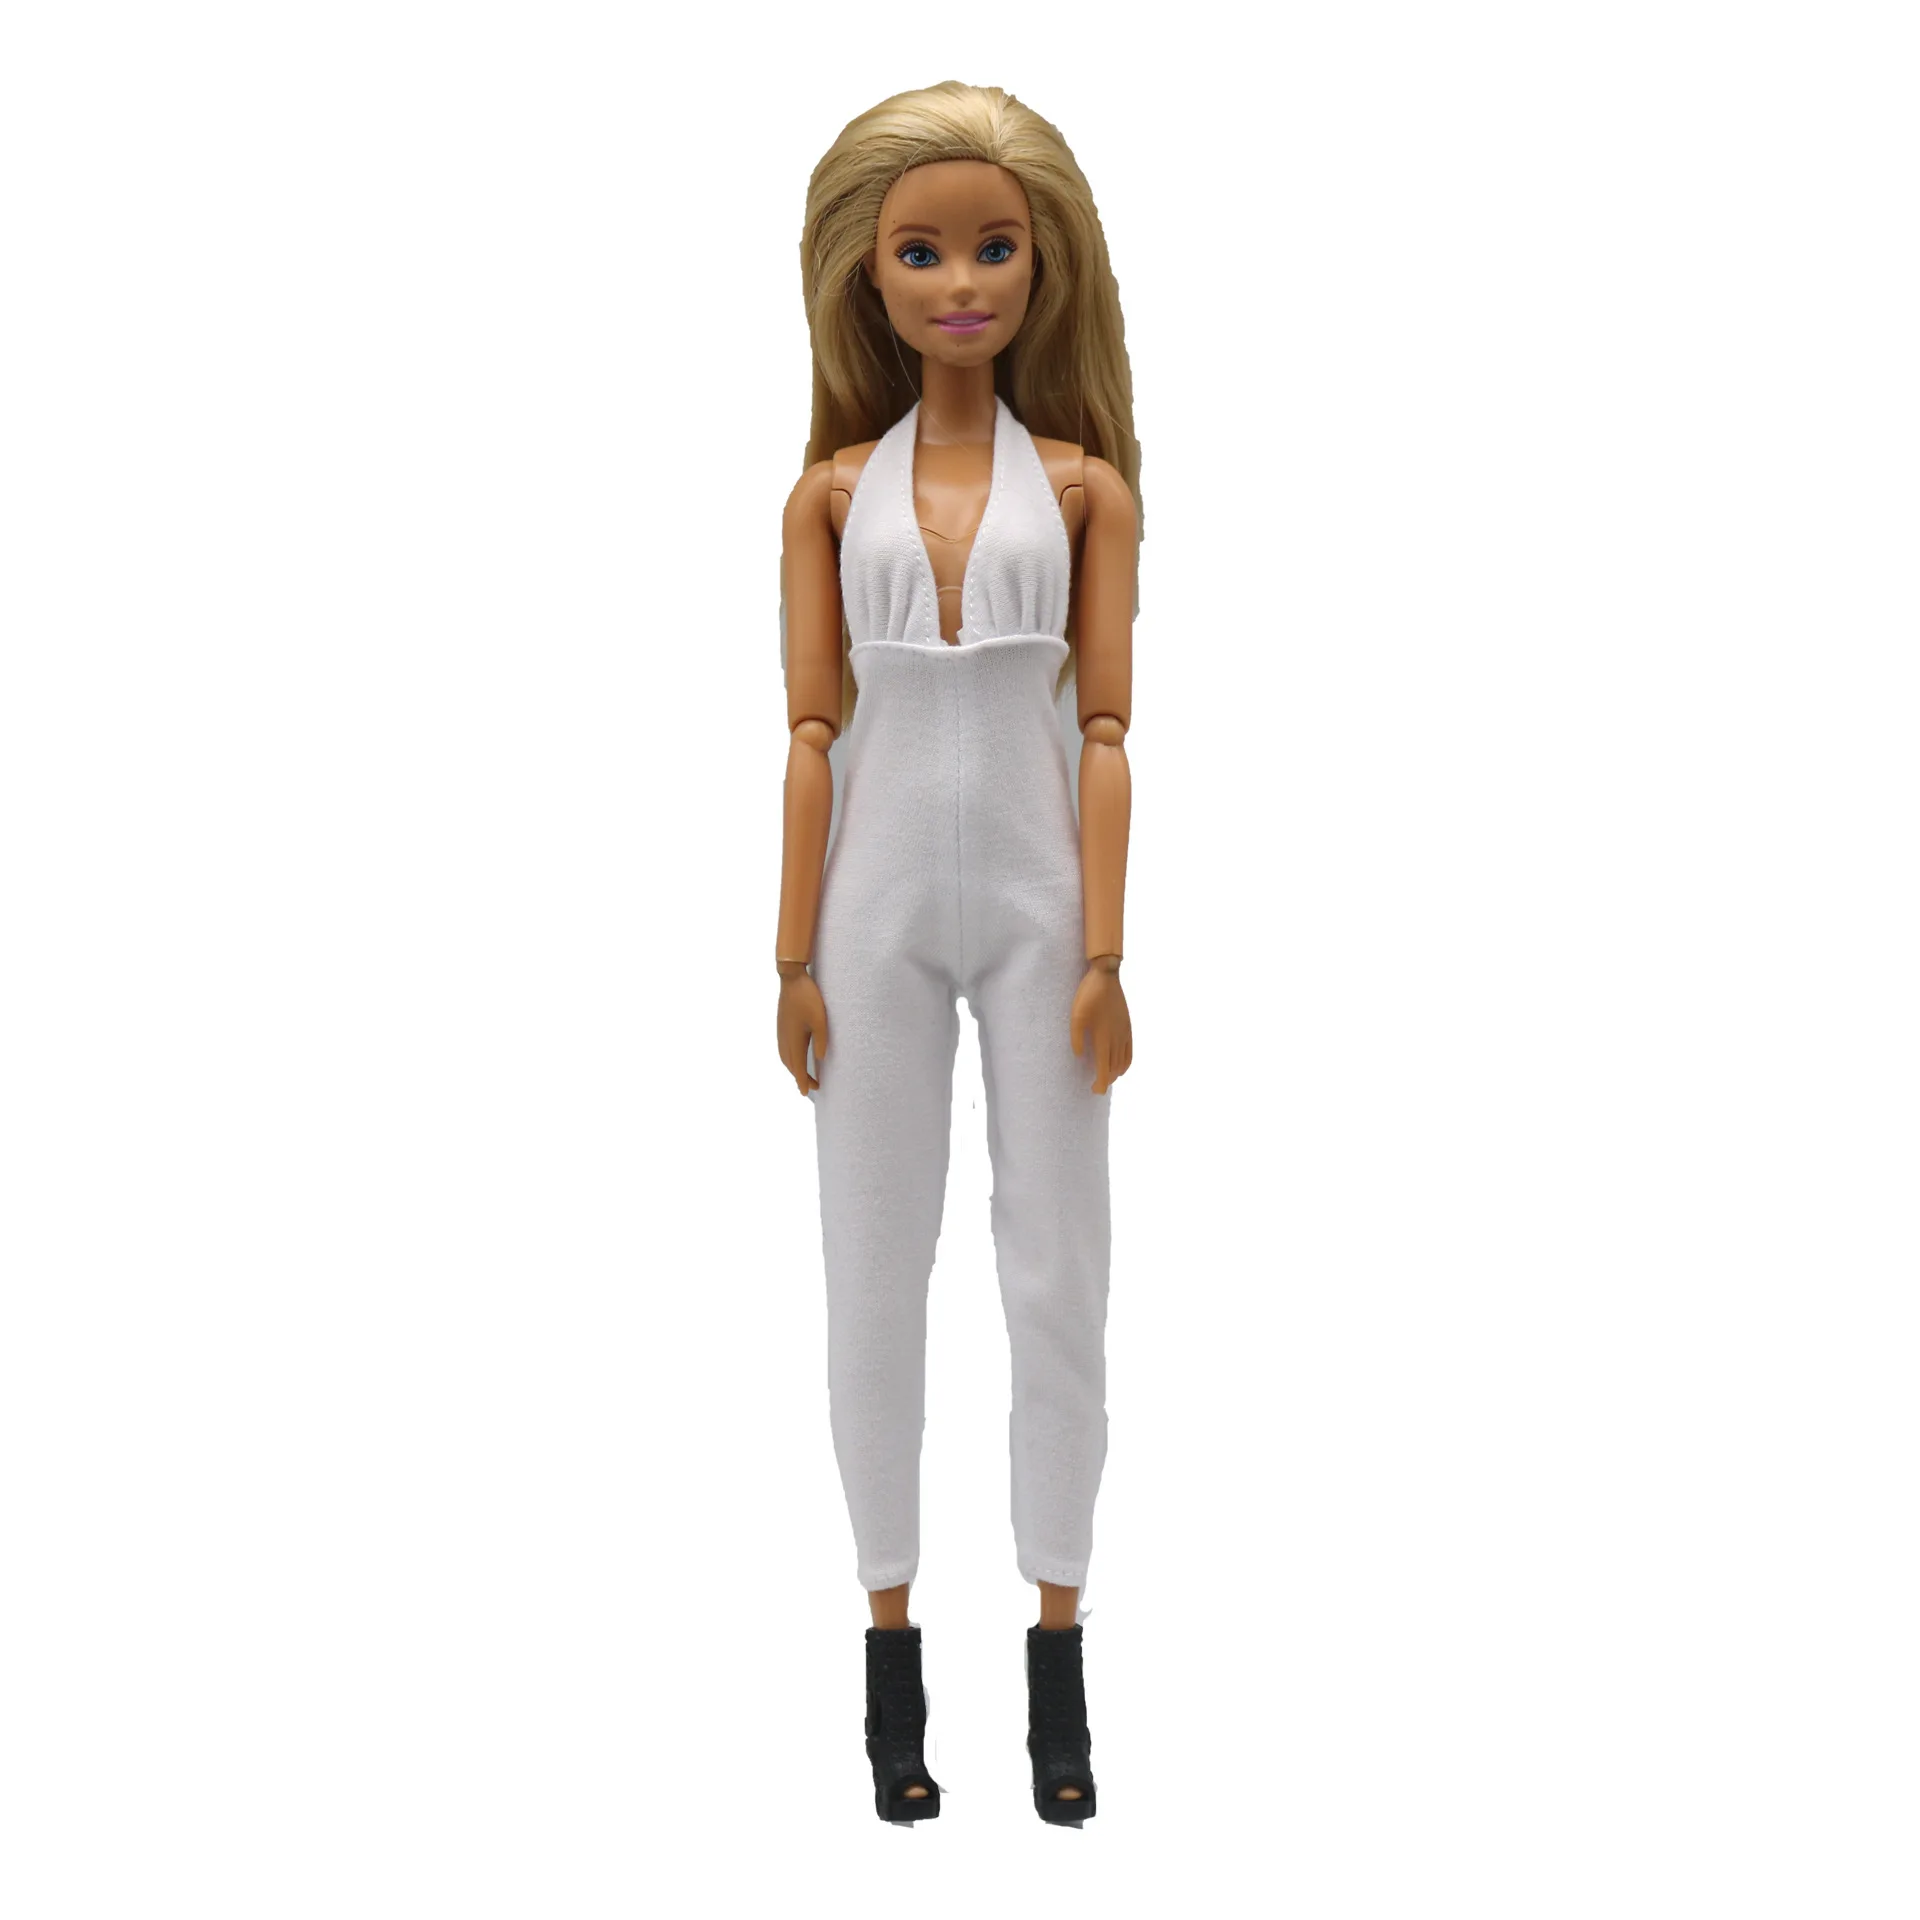 Görüntü /Barbie-giysileri-29cm-bebek-sıkı-elastik-seksi-düşük_imgs/426-4_uploads.jpeg